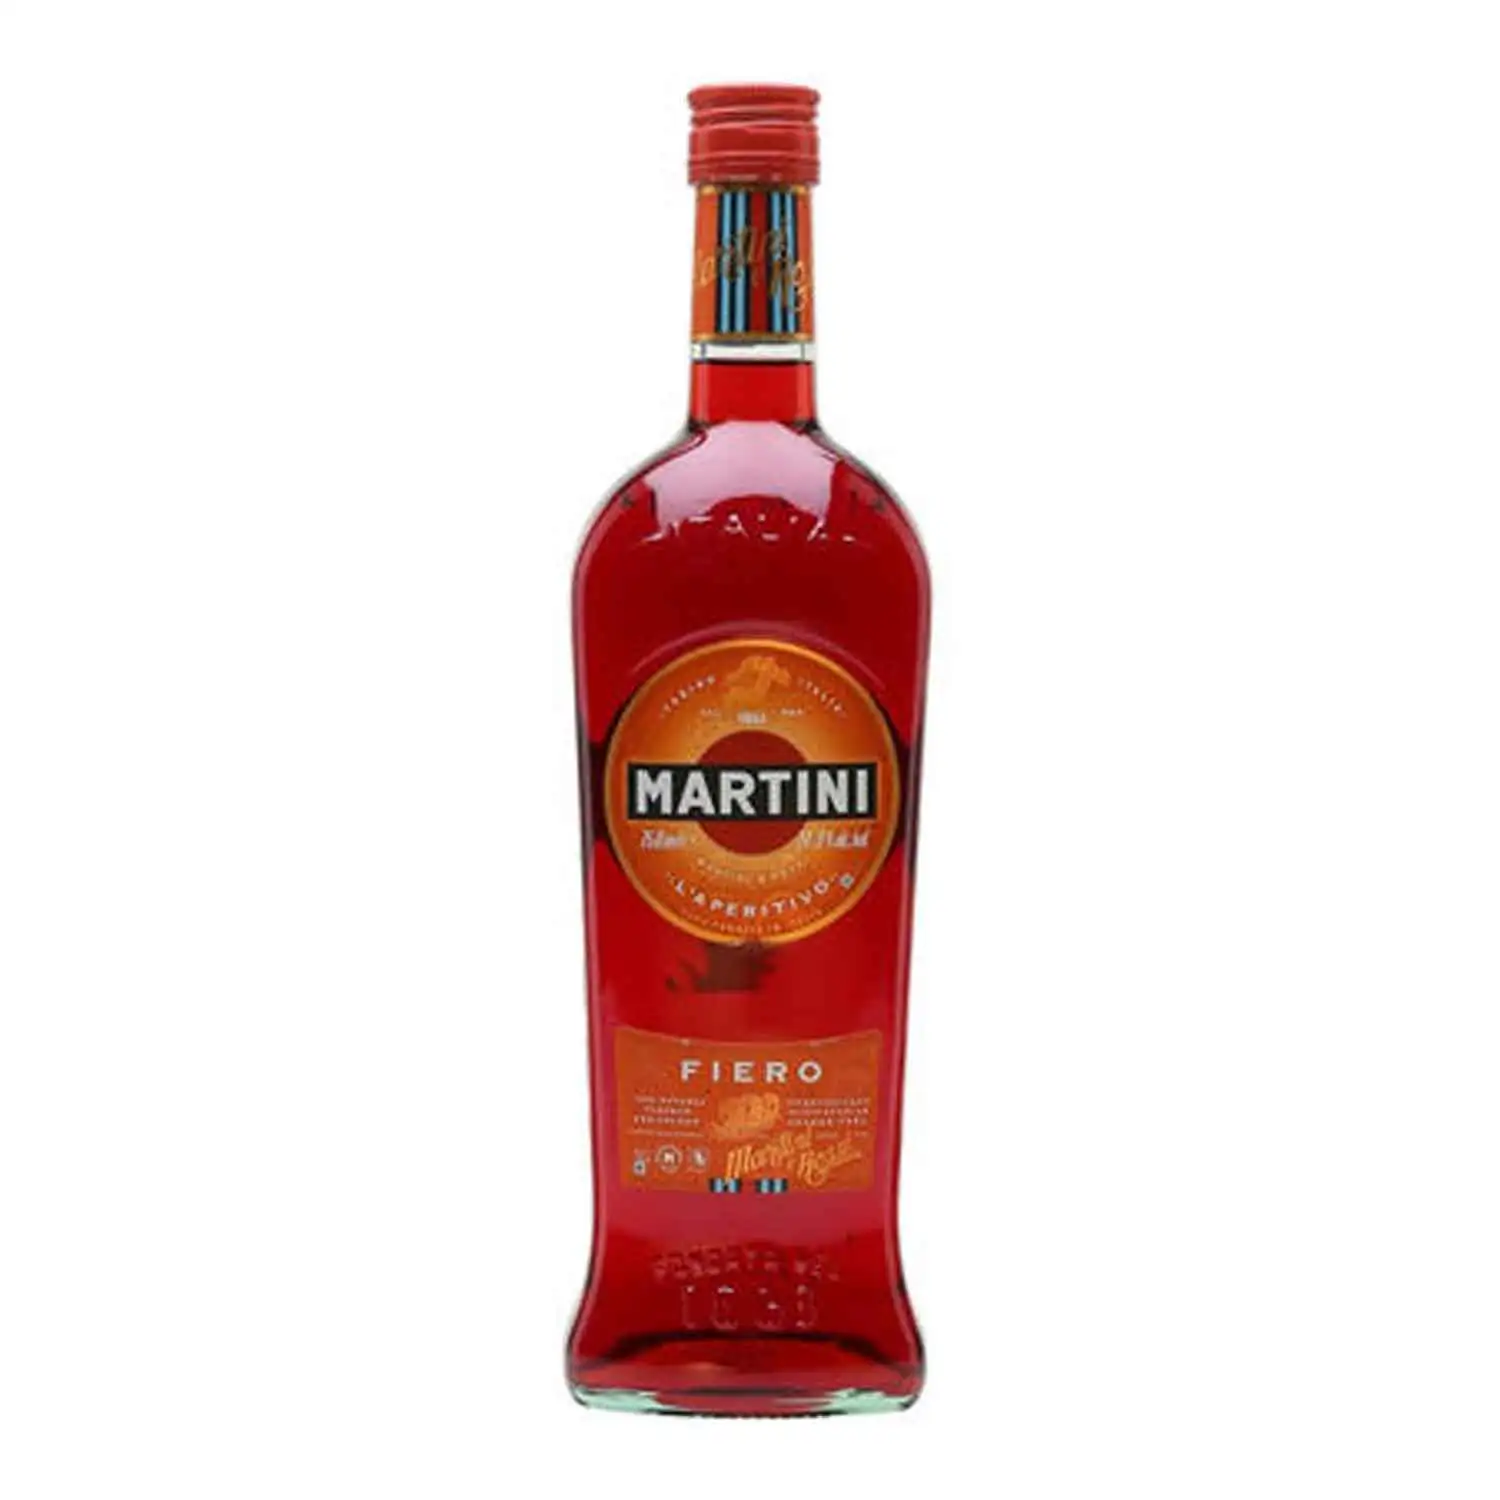 Martini fiero 1,5l Alc 14,9% - Buy at Real Tobacco